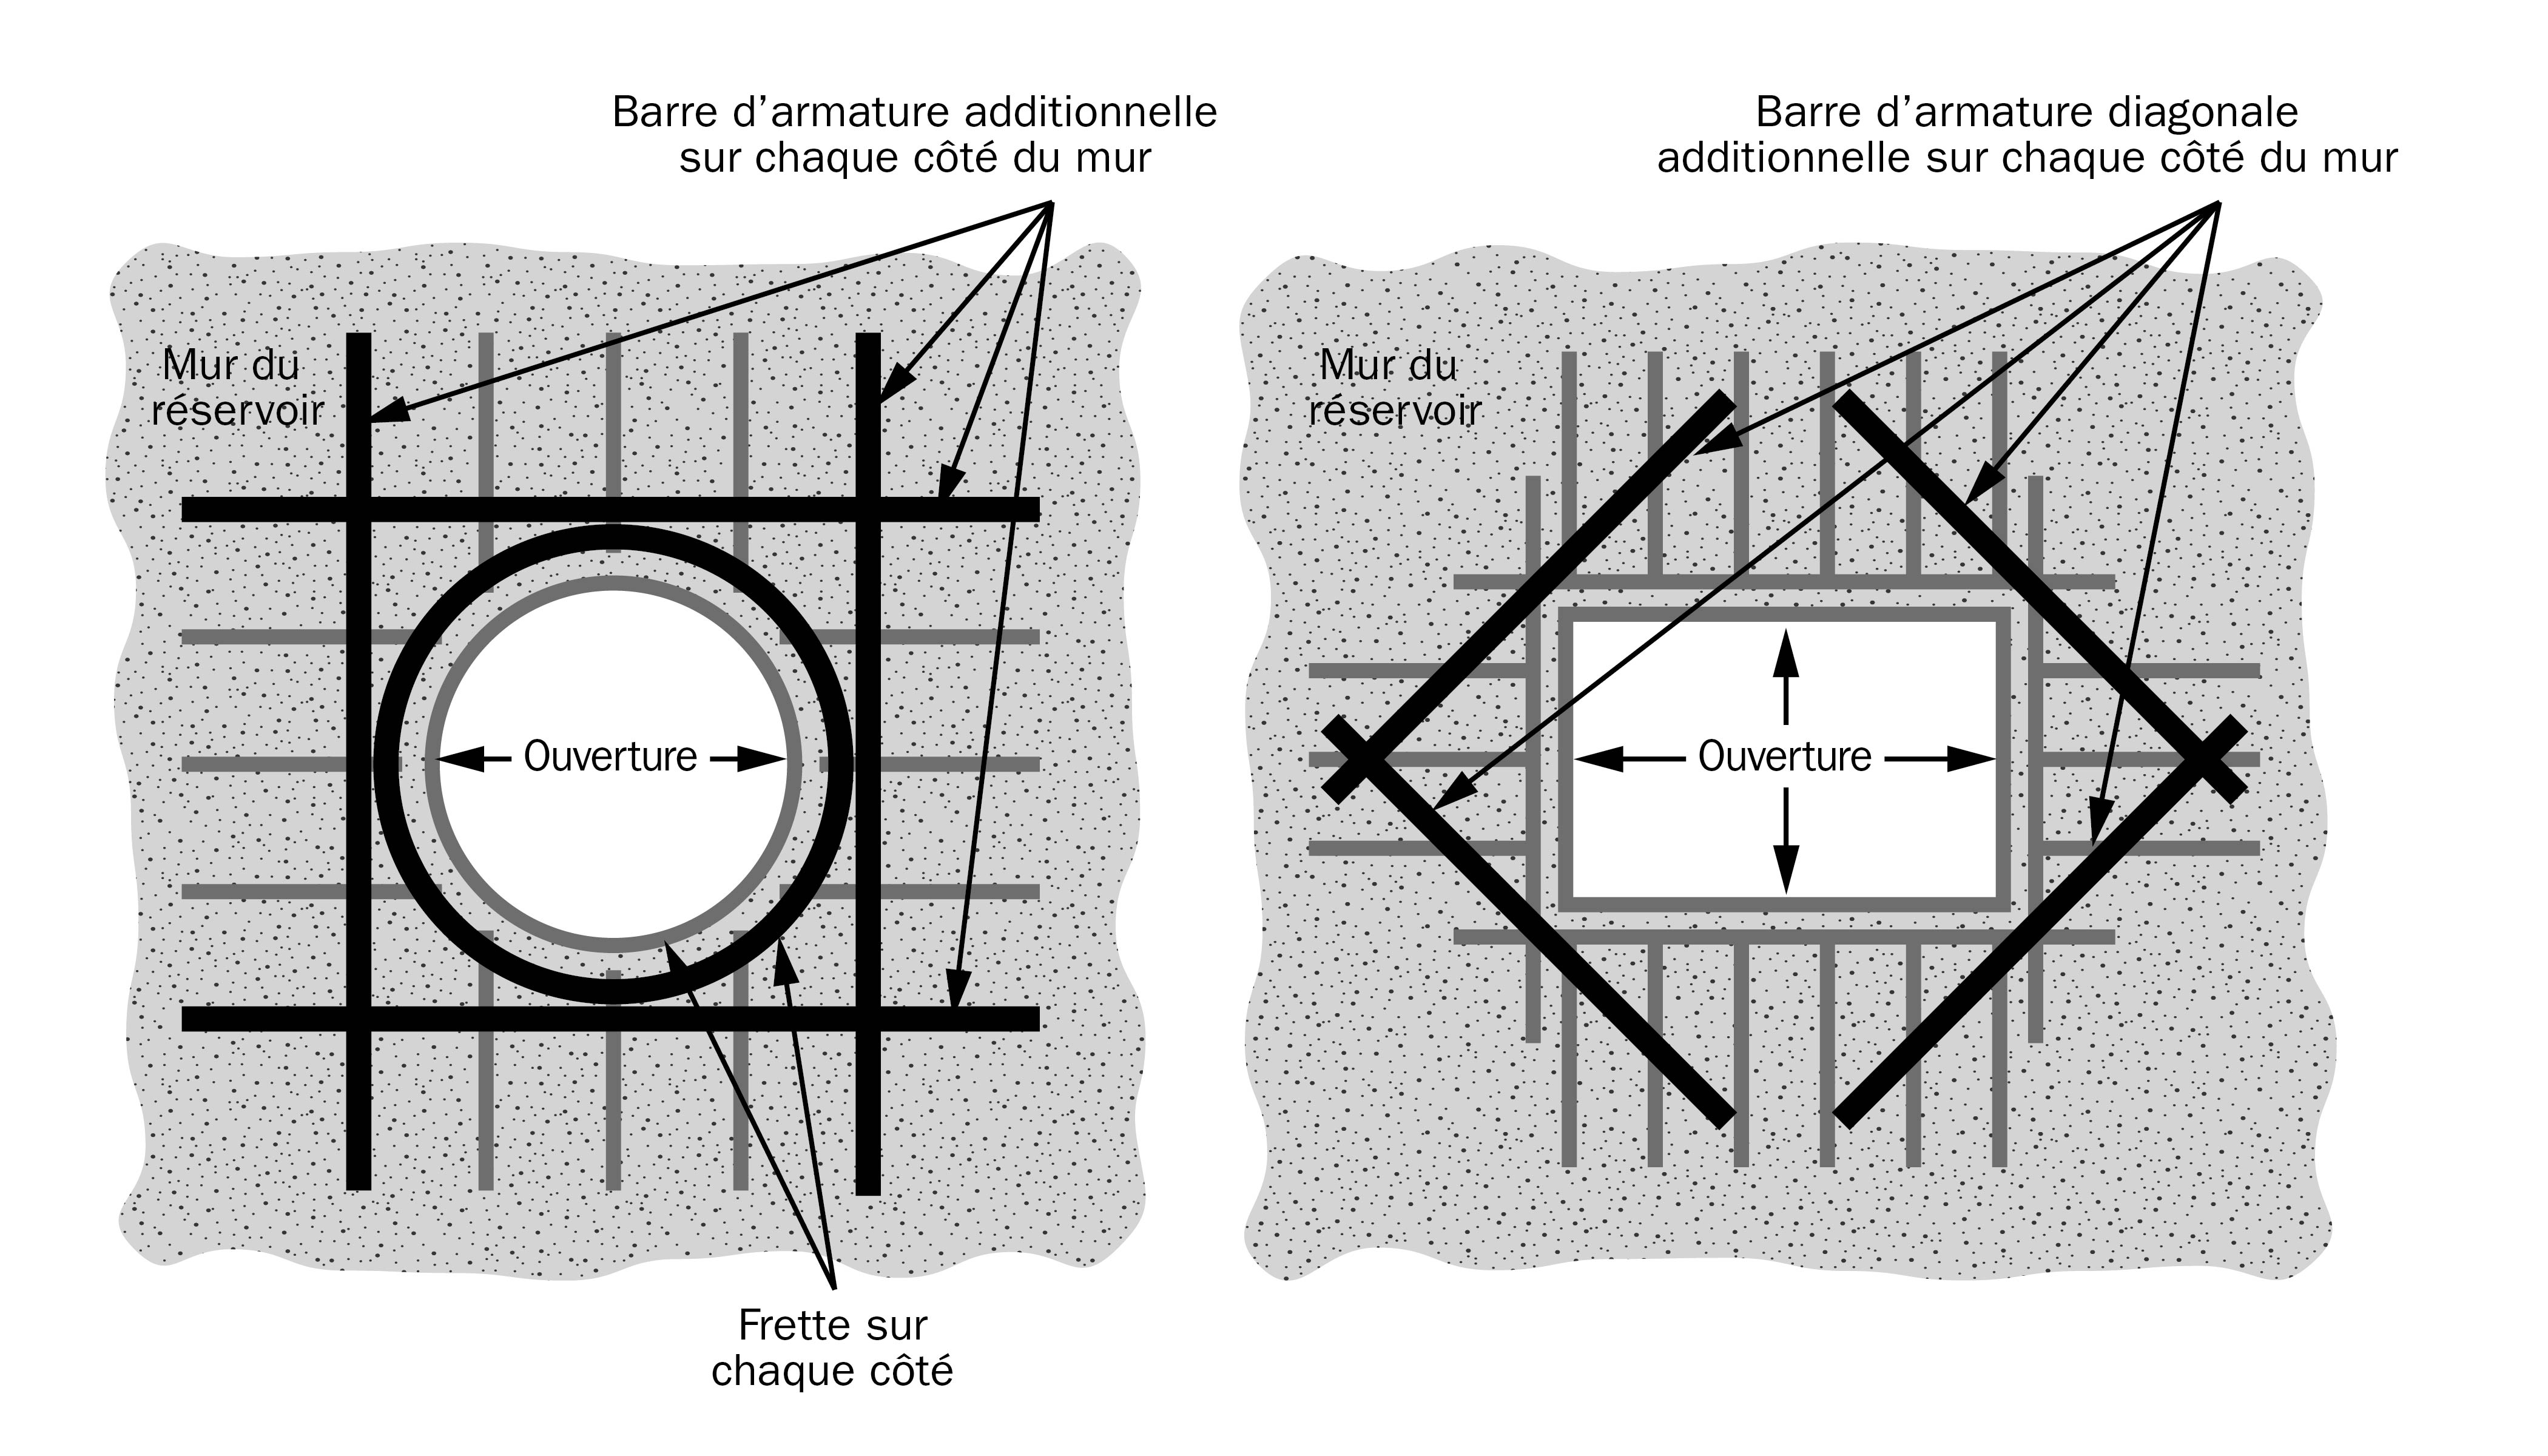 Schéma illustrant comment sont pratiquées les ouvertures dans des murs de réservoir de fumier en béton armé pour y faire passer la tuyauterie de transfert.